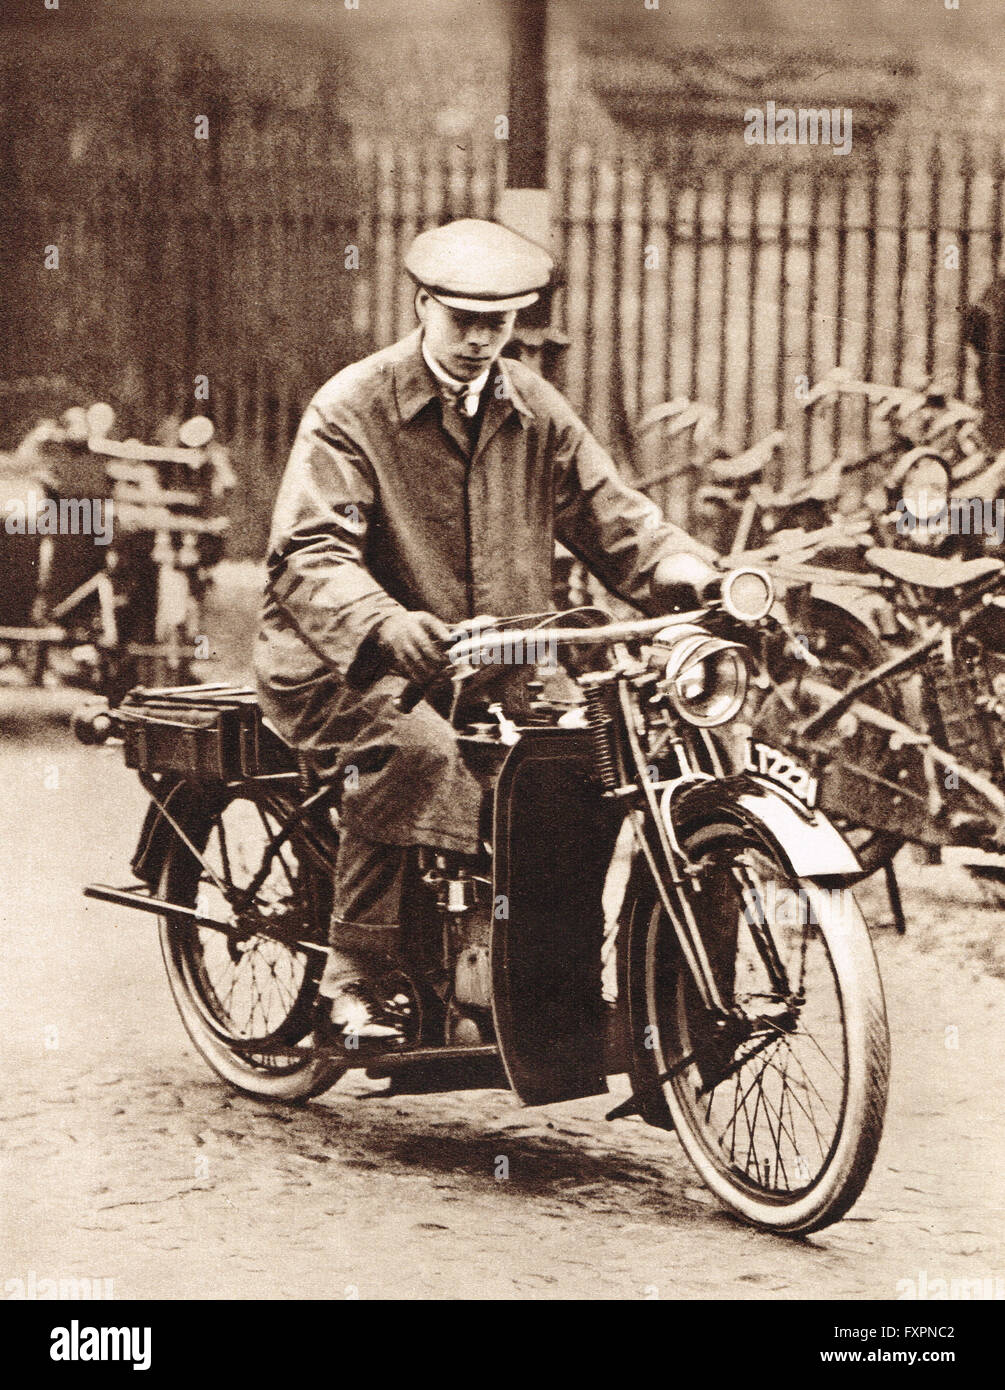 El Príncipe Alberto, el futuro Rey Jorge VI, en una moto en la Universidad de Cambridge en 1920 Foto de stock